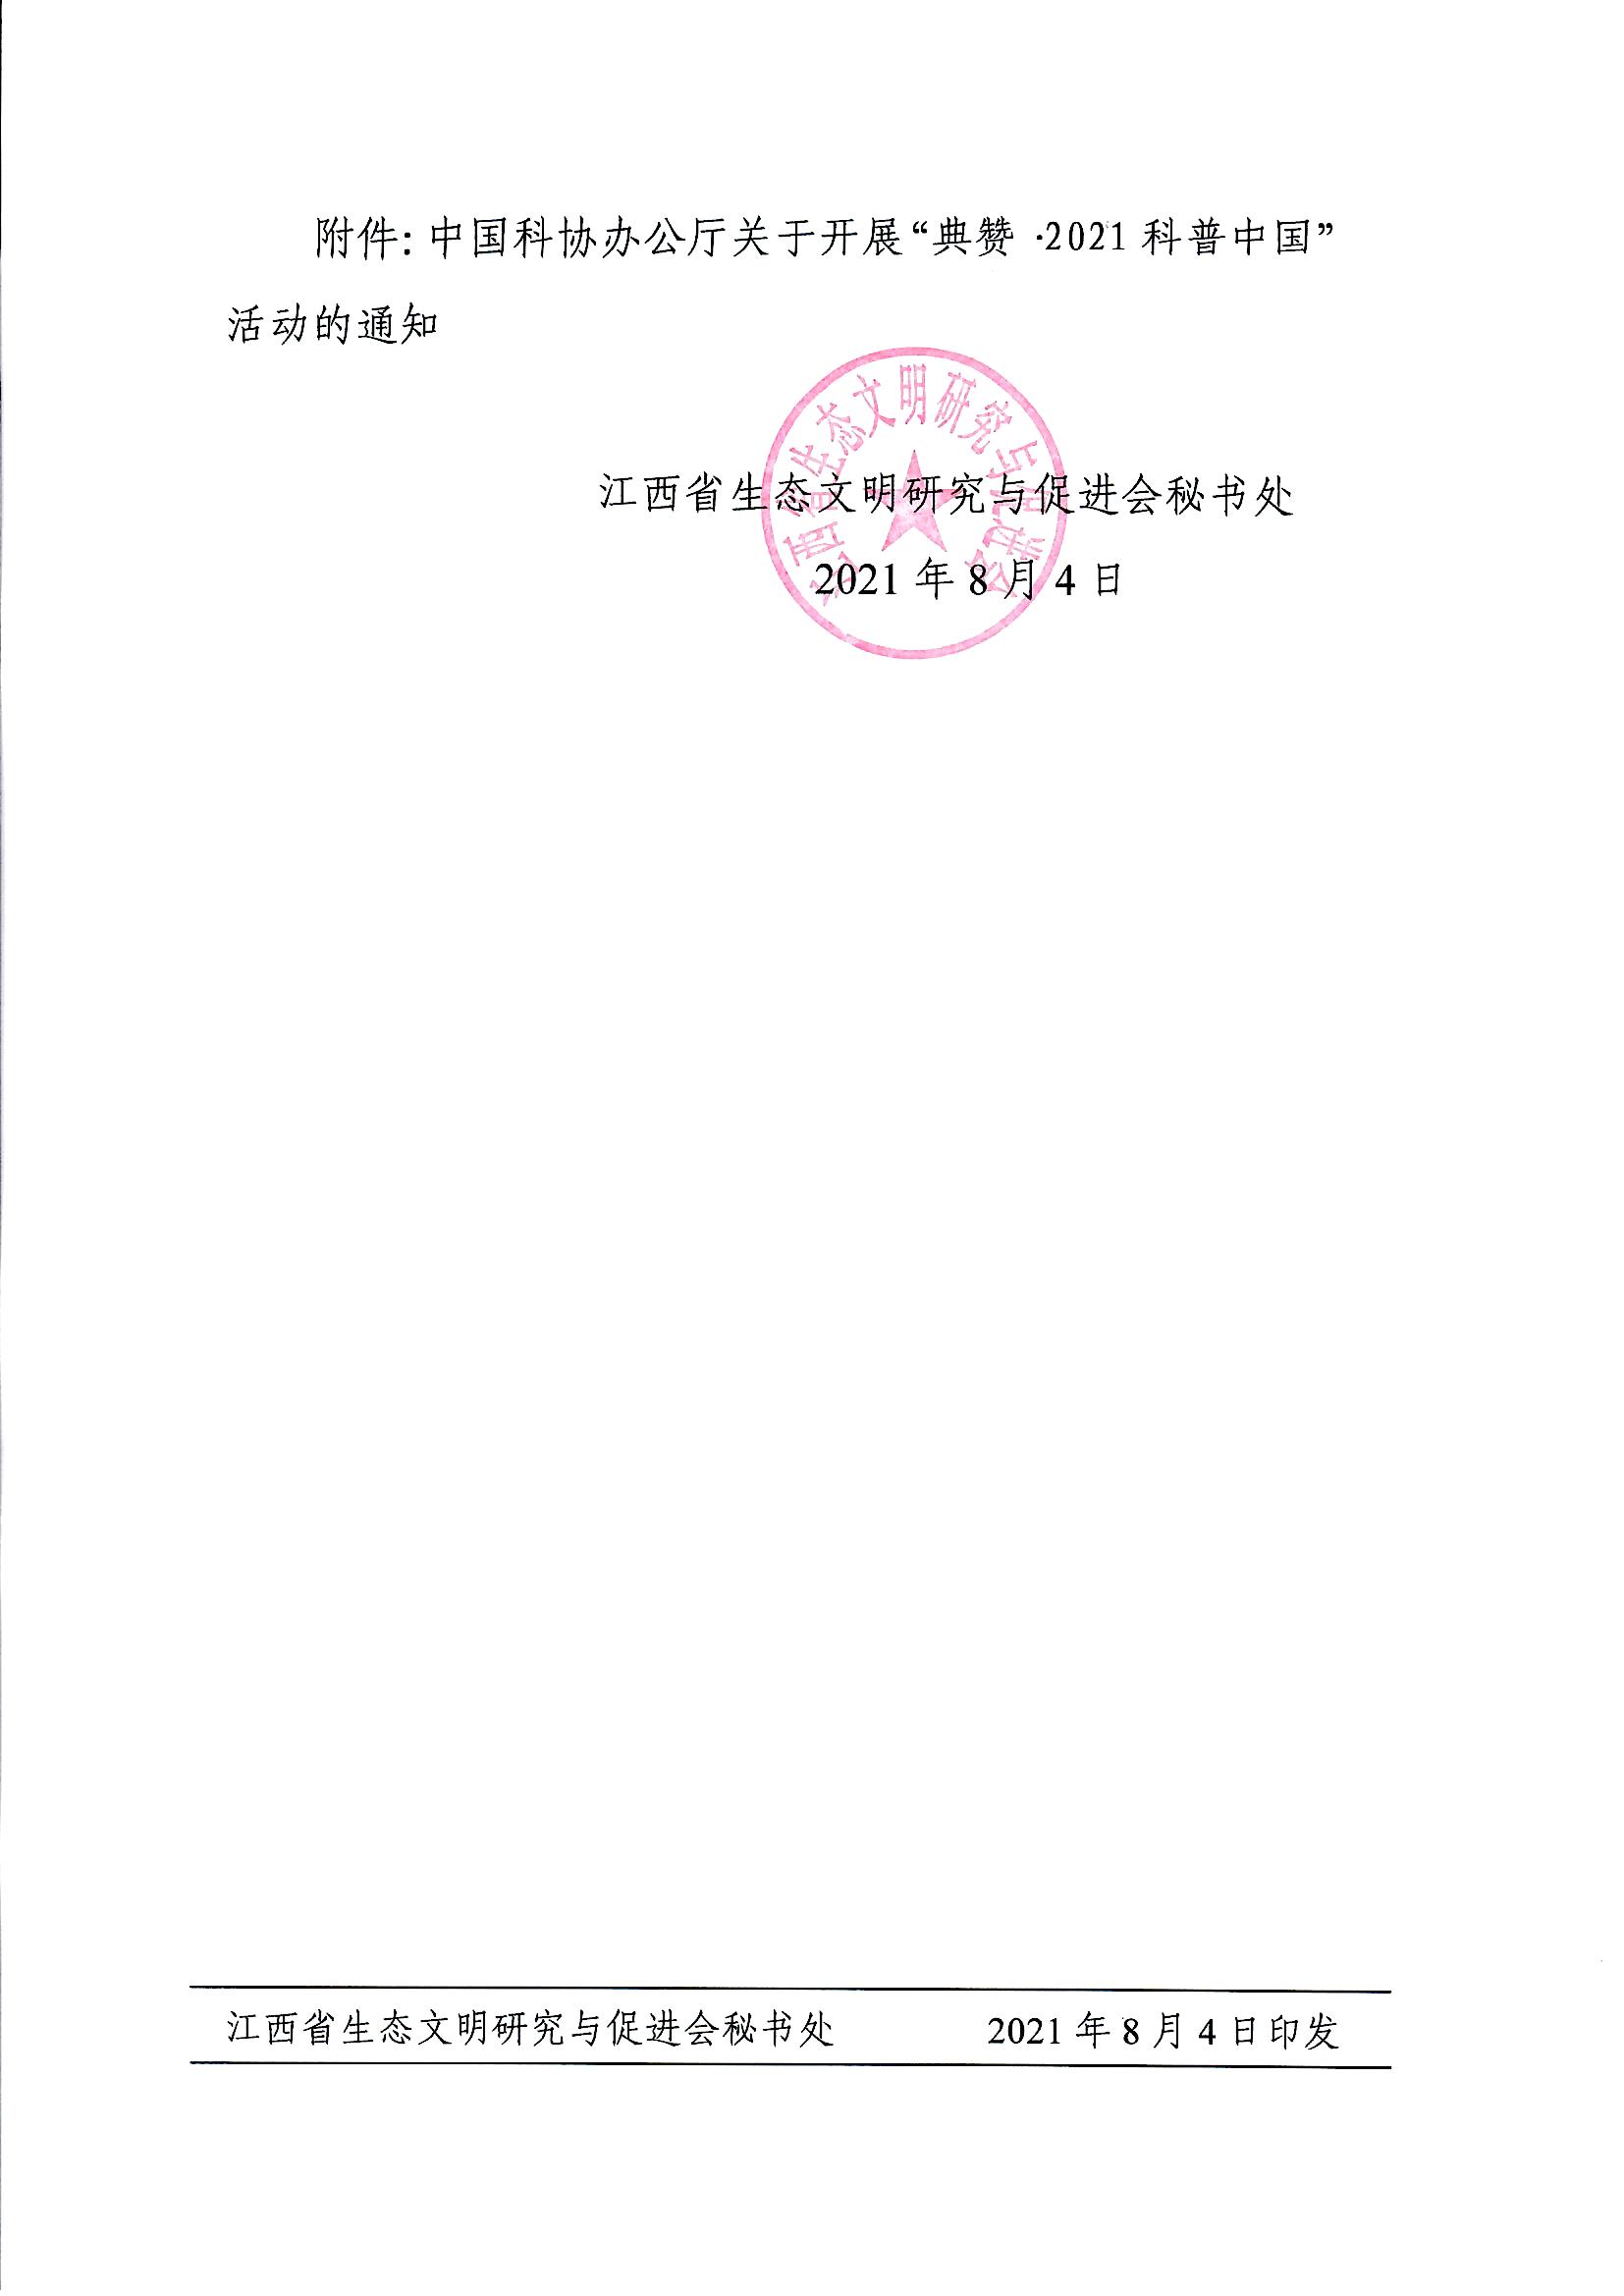 页面提取自－转发中国科协办公厅关于开展“典赞•2021科普中国”活动的通知11_页面_2.jpg